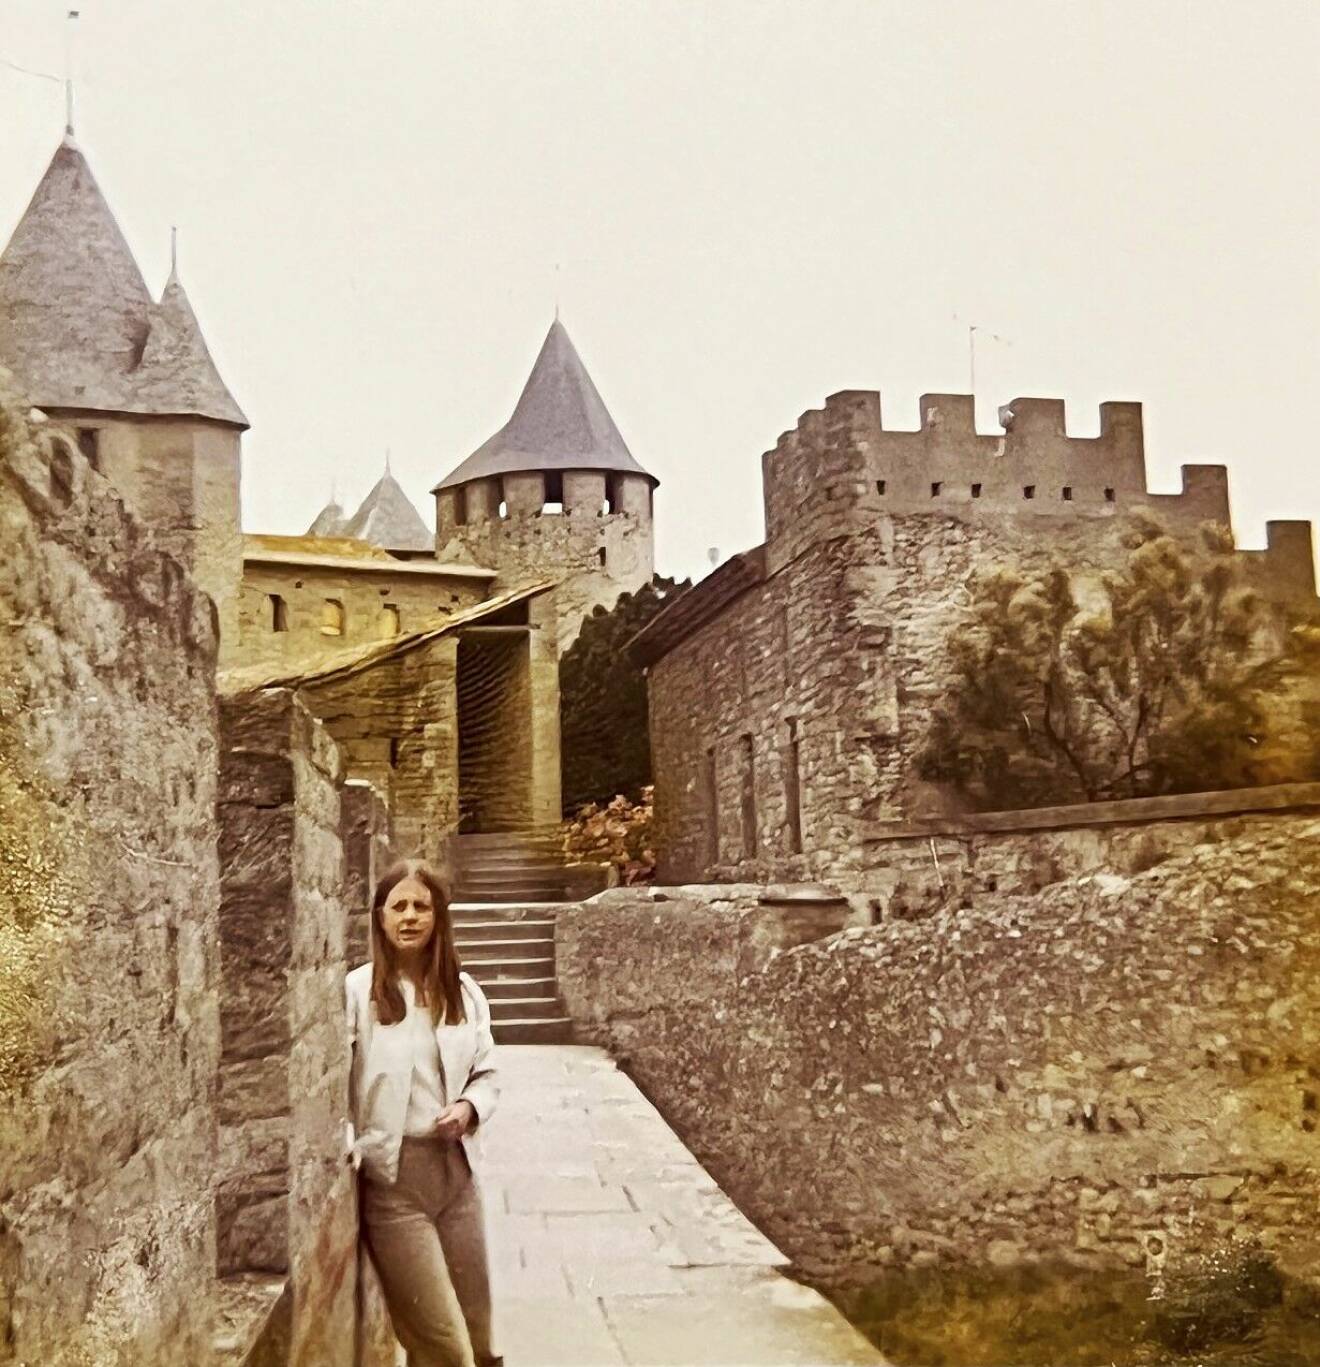 Inger står vid en mur i borgen i den medeltida staden Carcassonne och tillsammans med Ulla berättar hon att de fortfarande skrattar åt minnet av hur Ulla fastnade med håret i en herres kavajknapp.